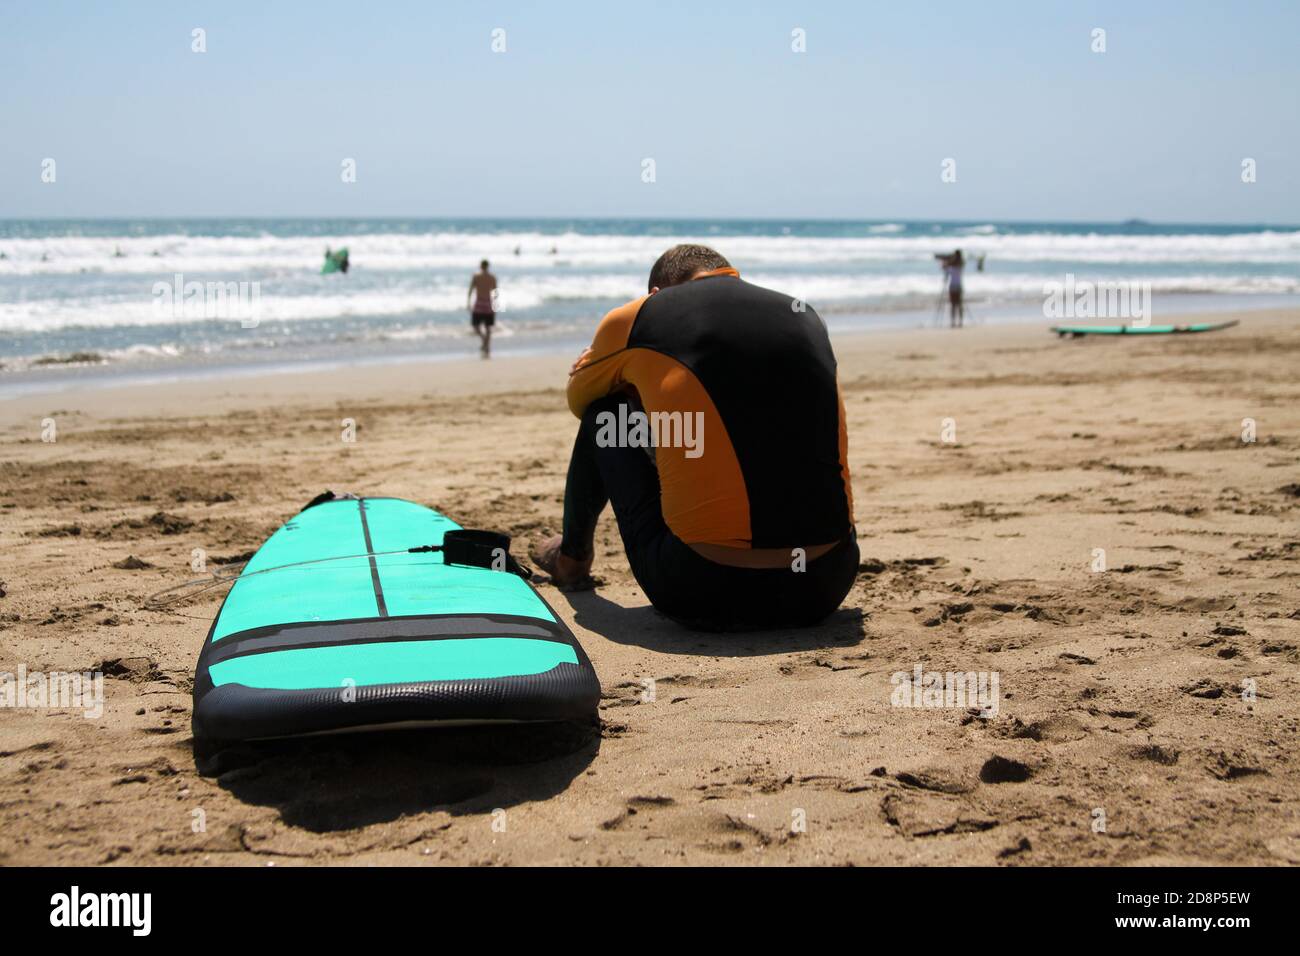 Surfer principiante in un costume da bagno è seduto sulla sabbia bagnata sull'oceano. La sua testa è piegata su mani piegate. Accanto c'è una tavola da surf. Surfista Foto Stock